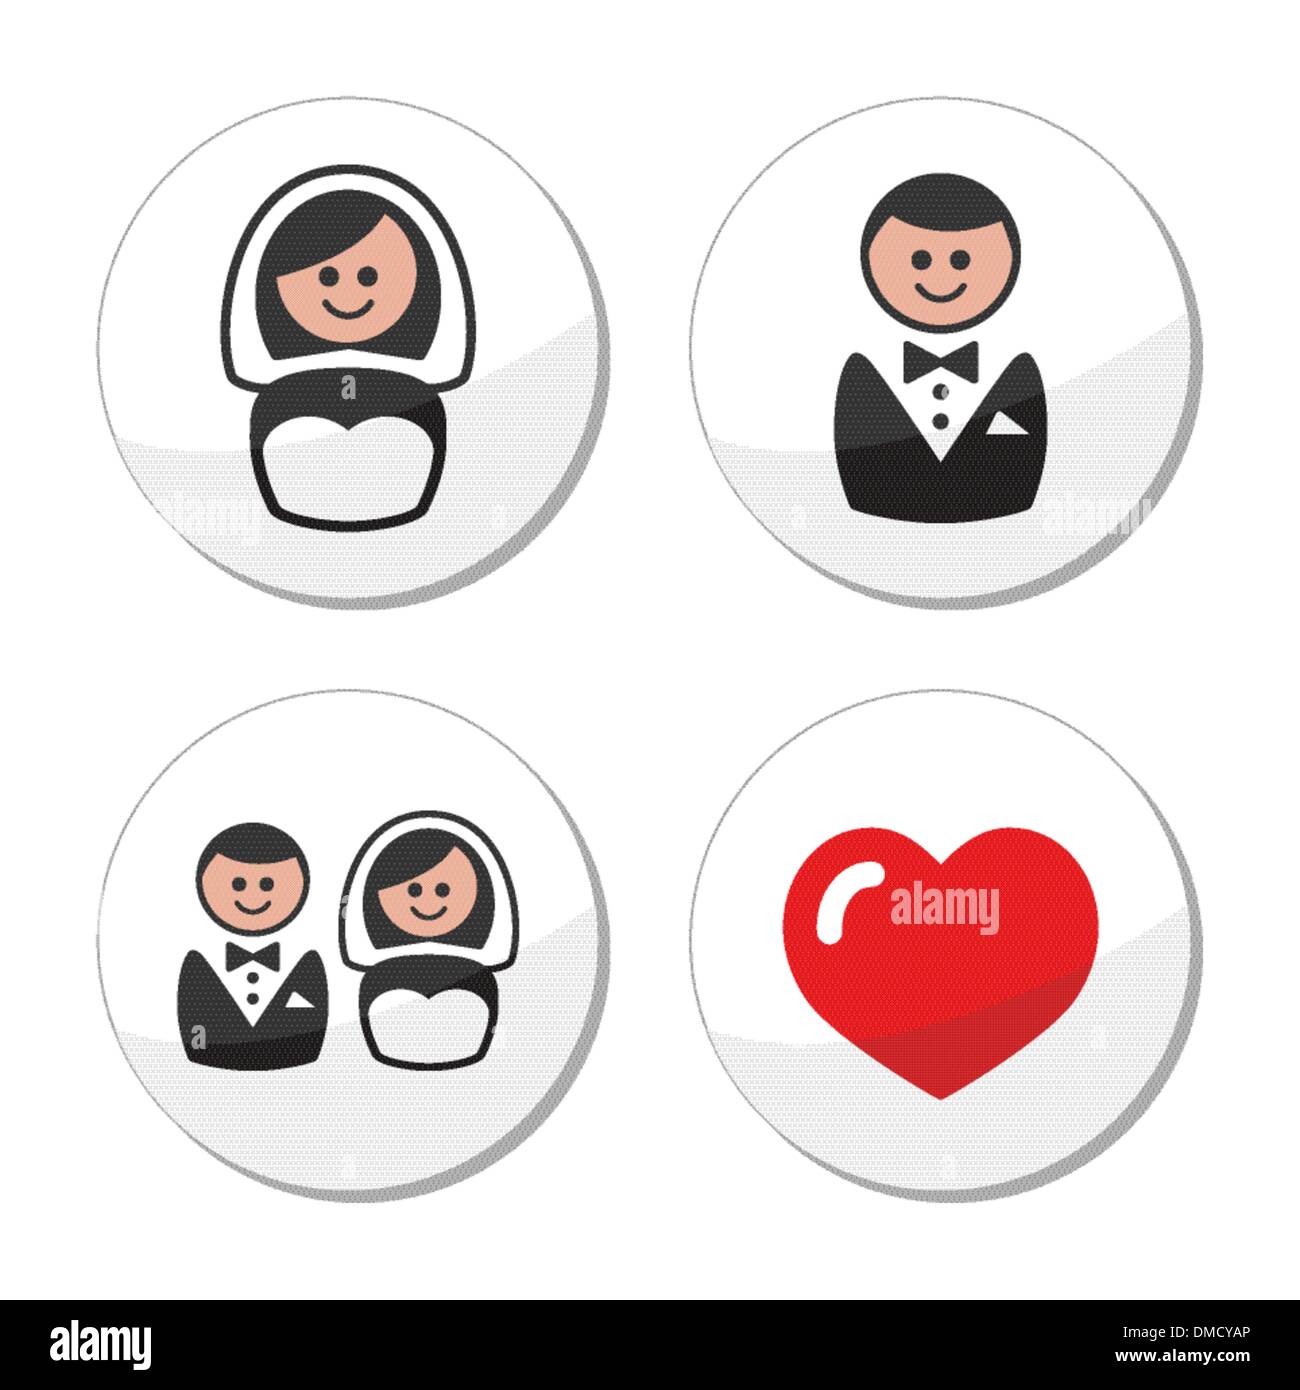 Bräutigam und Braut auf Runde weiße Etiketten Stock Vektor